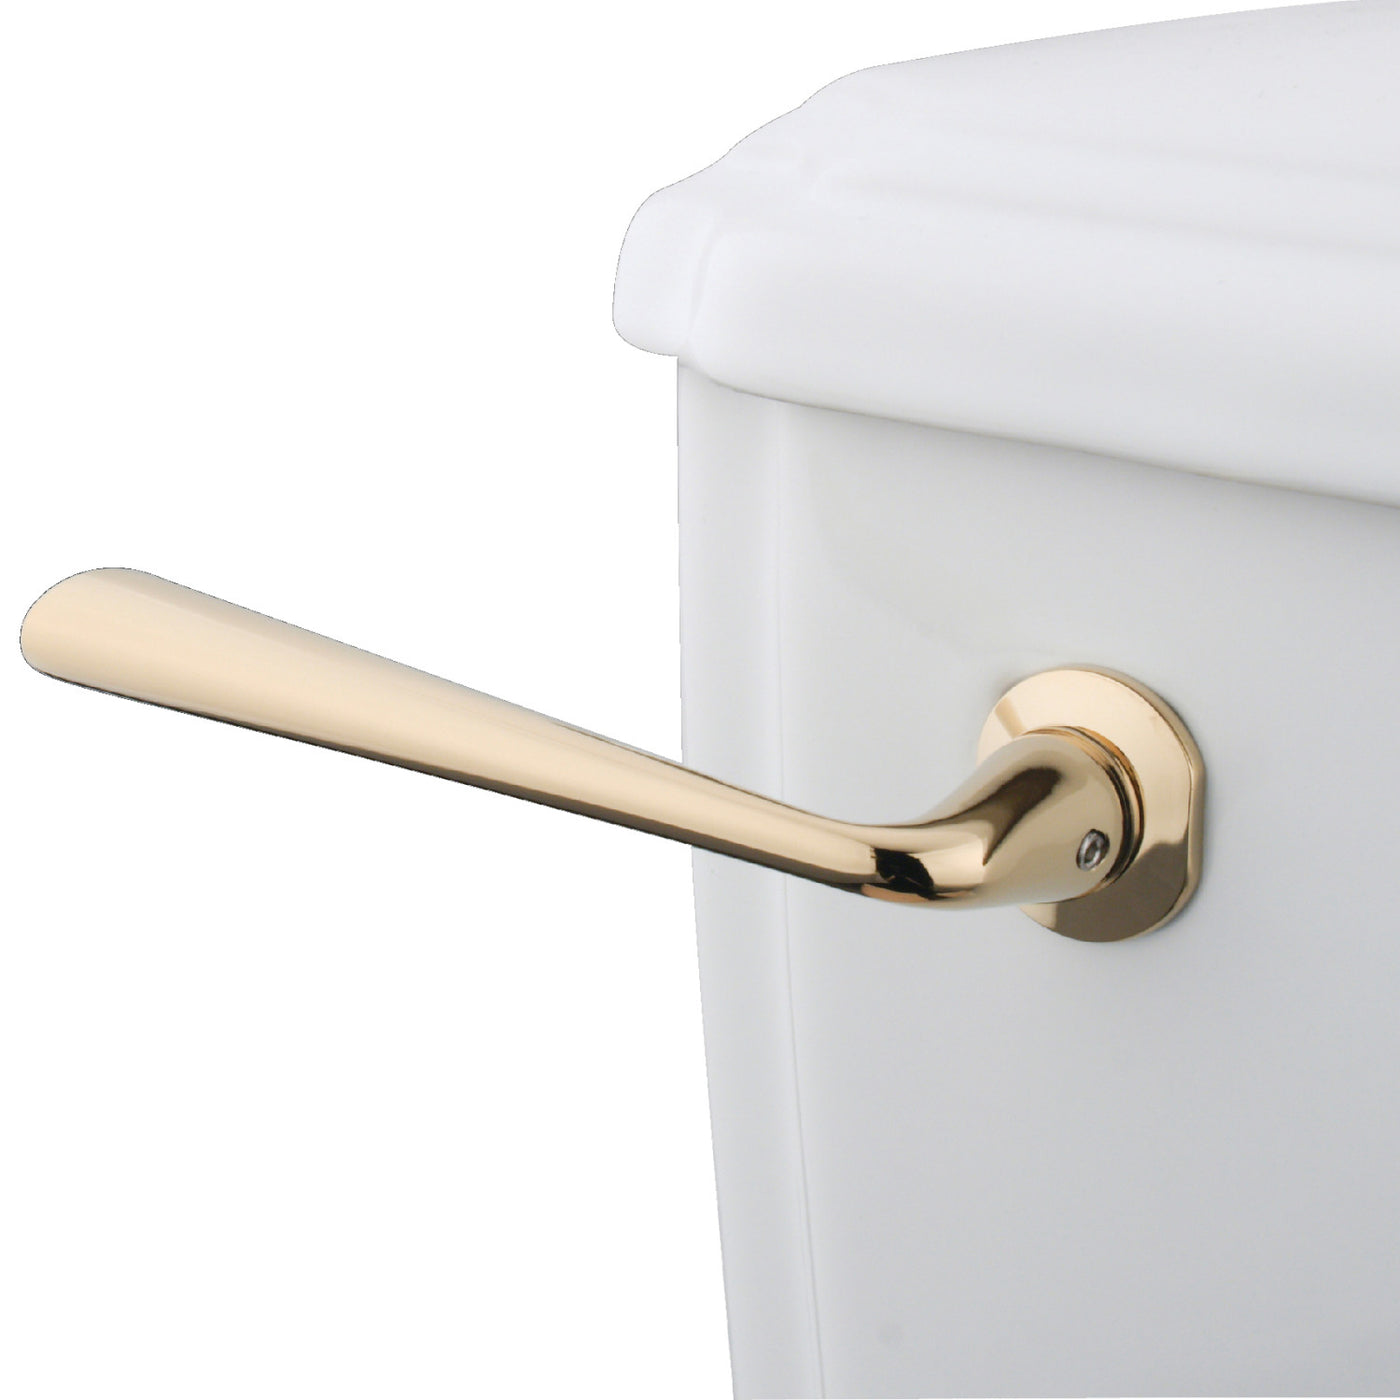 Elements of Design EKTZL2 Toilet Tank Lever, Polished Brass